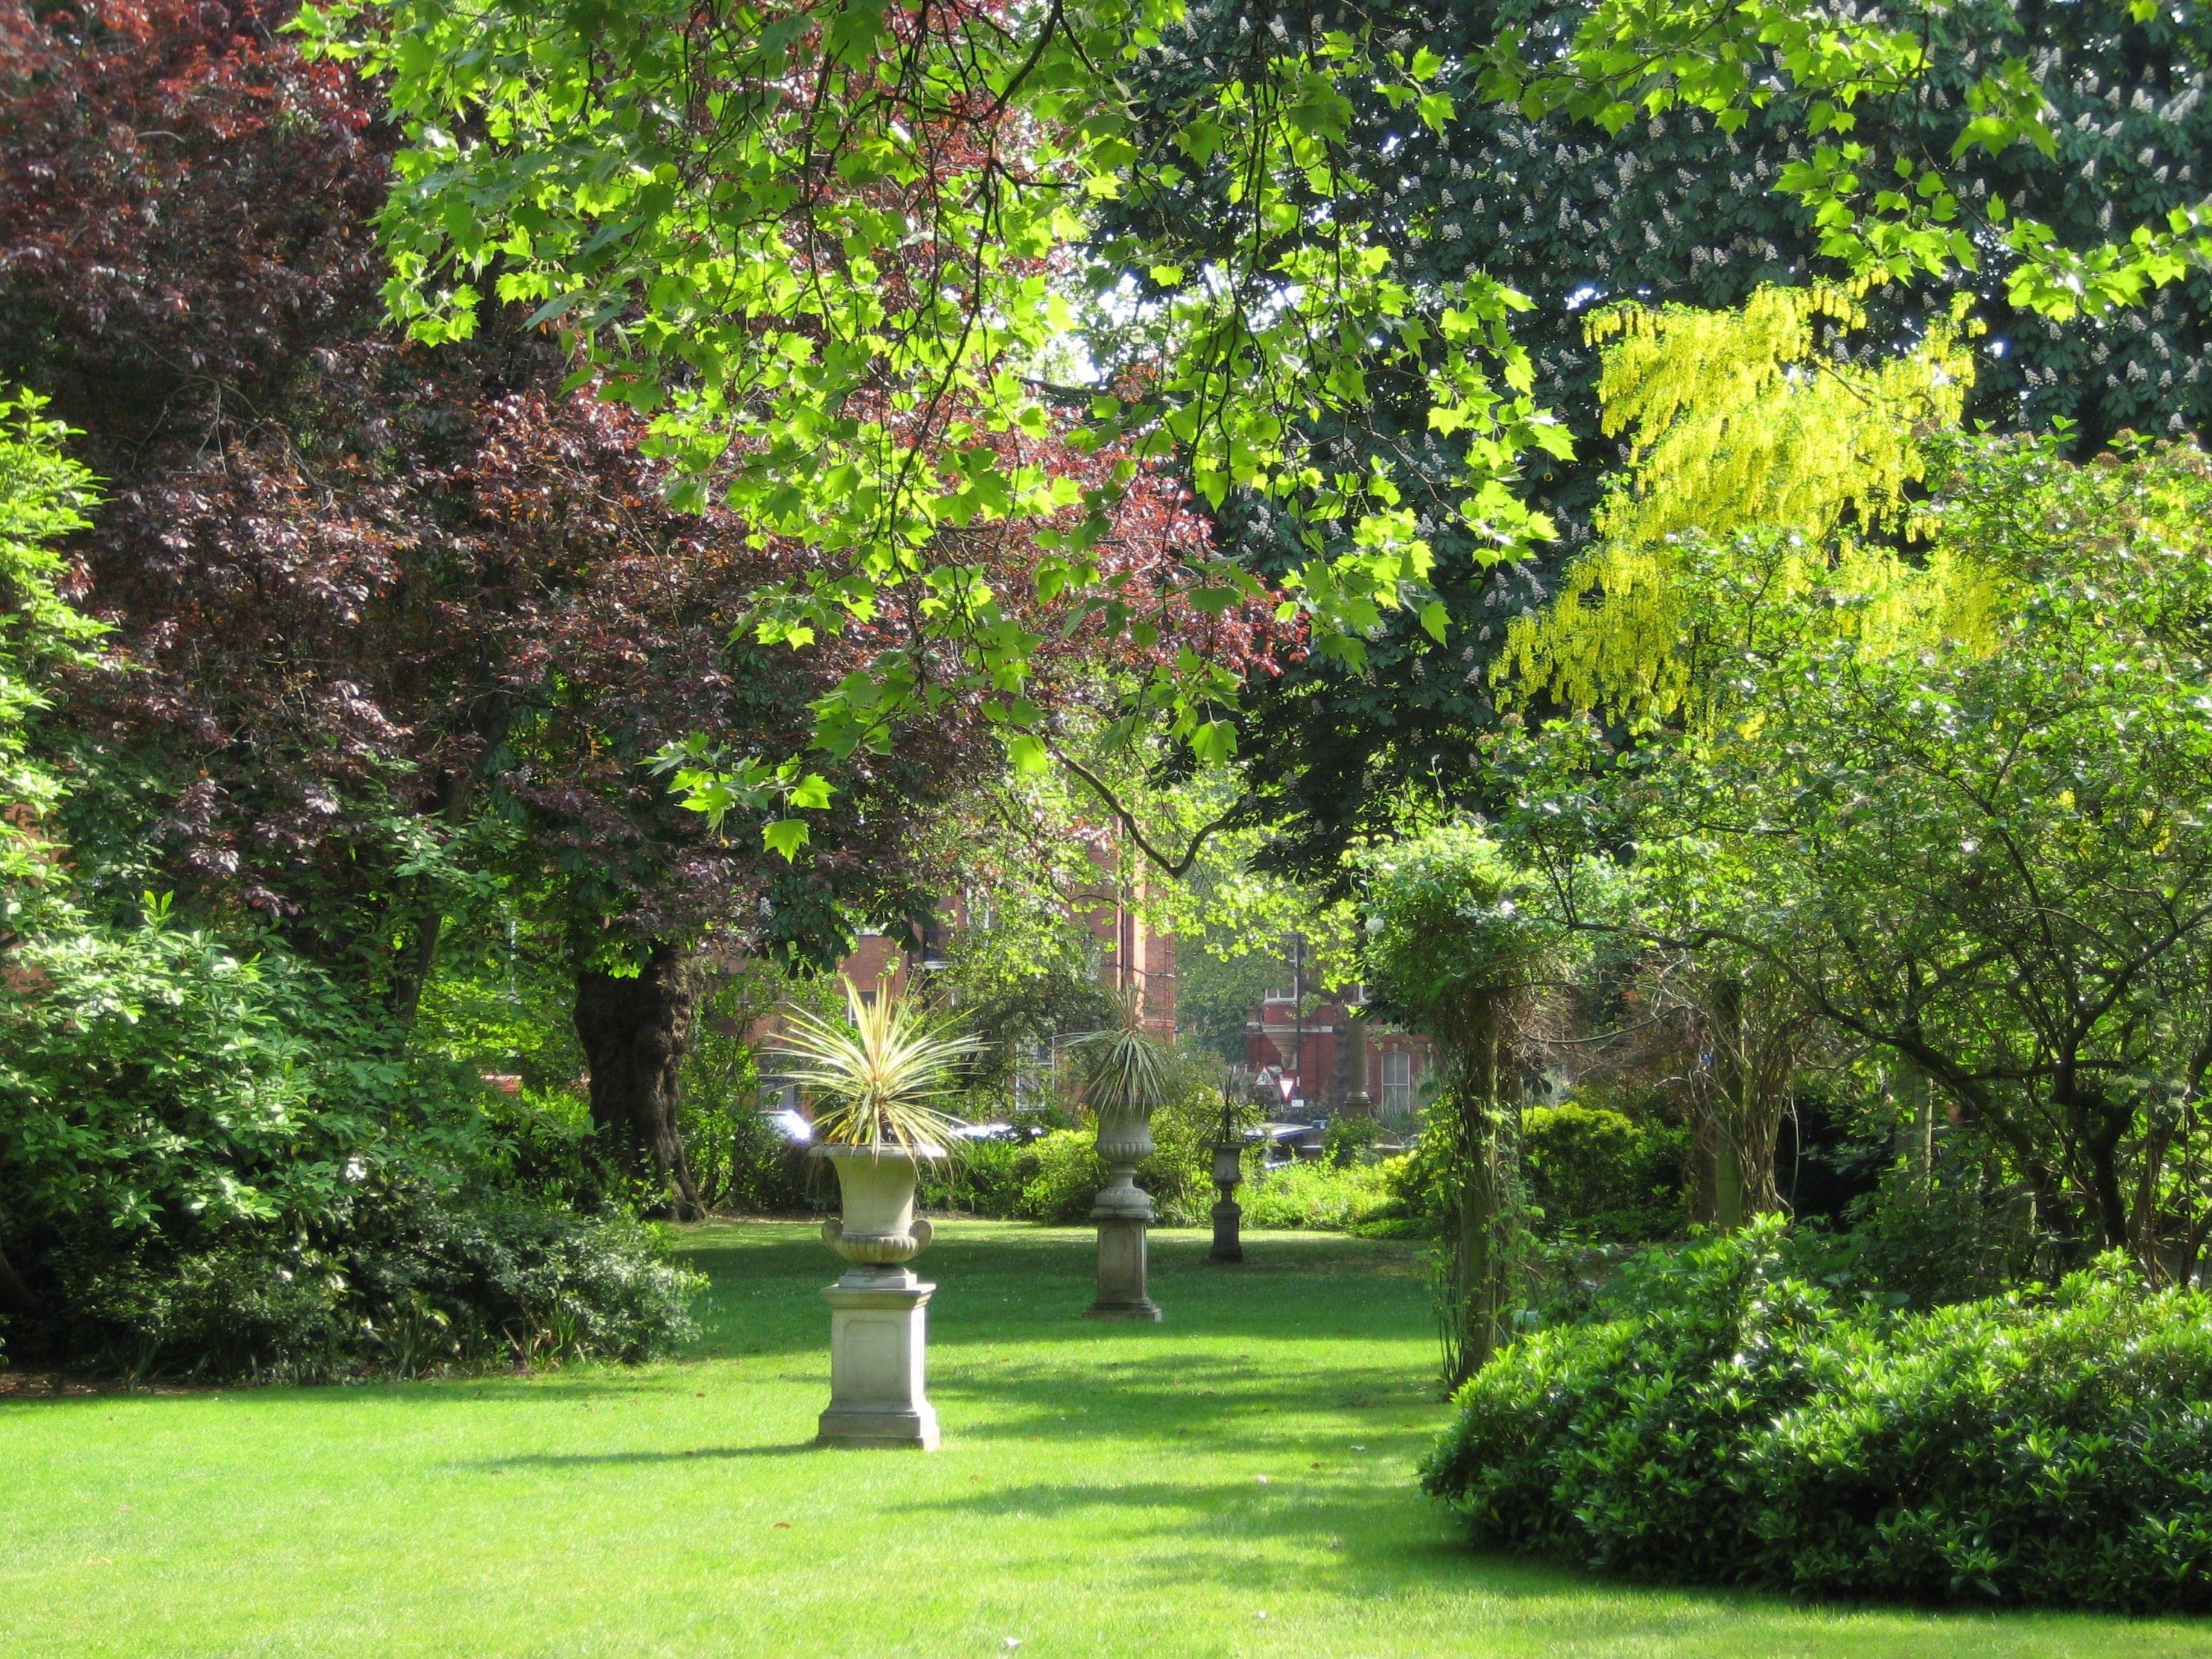 Hans Place Garden